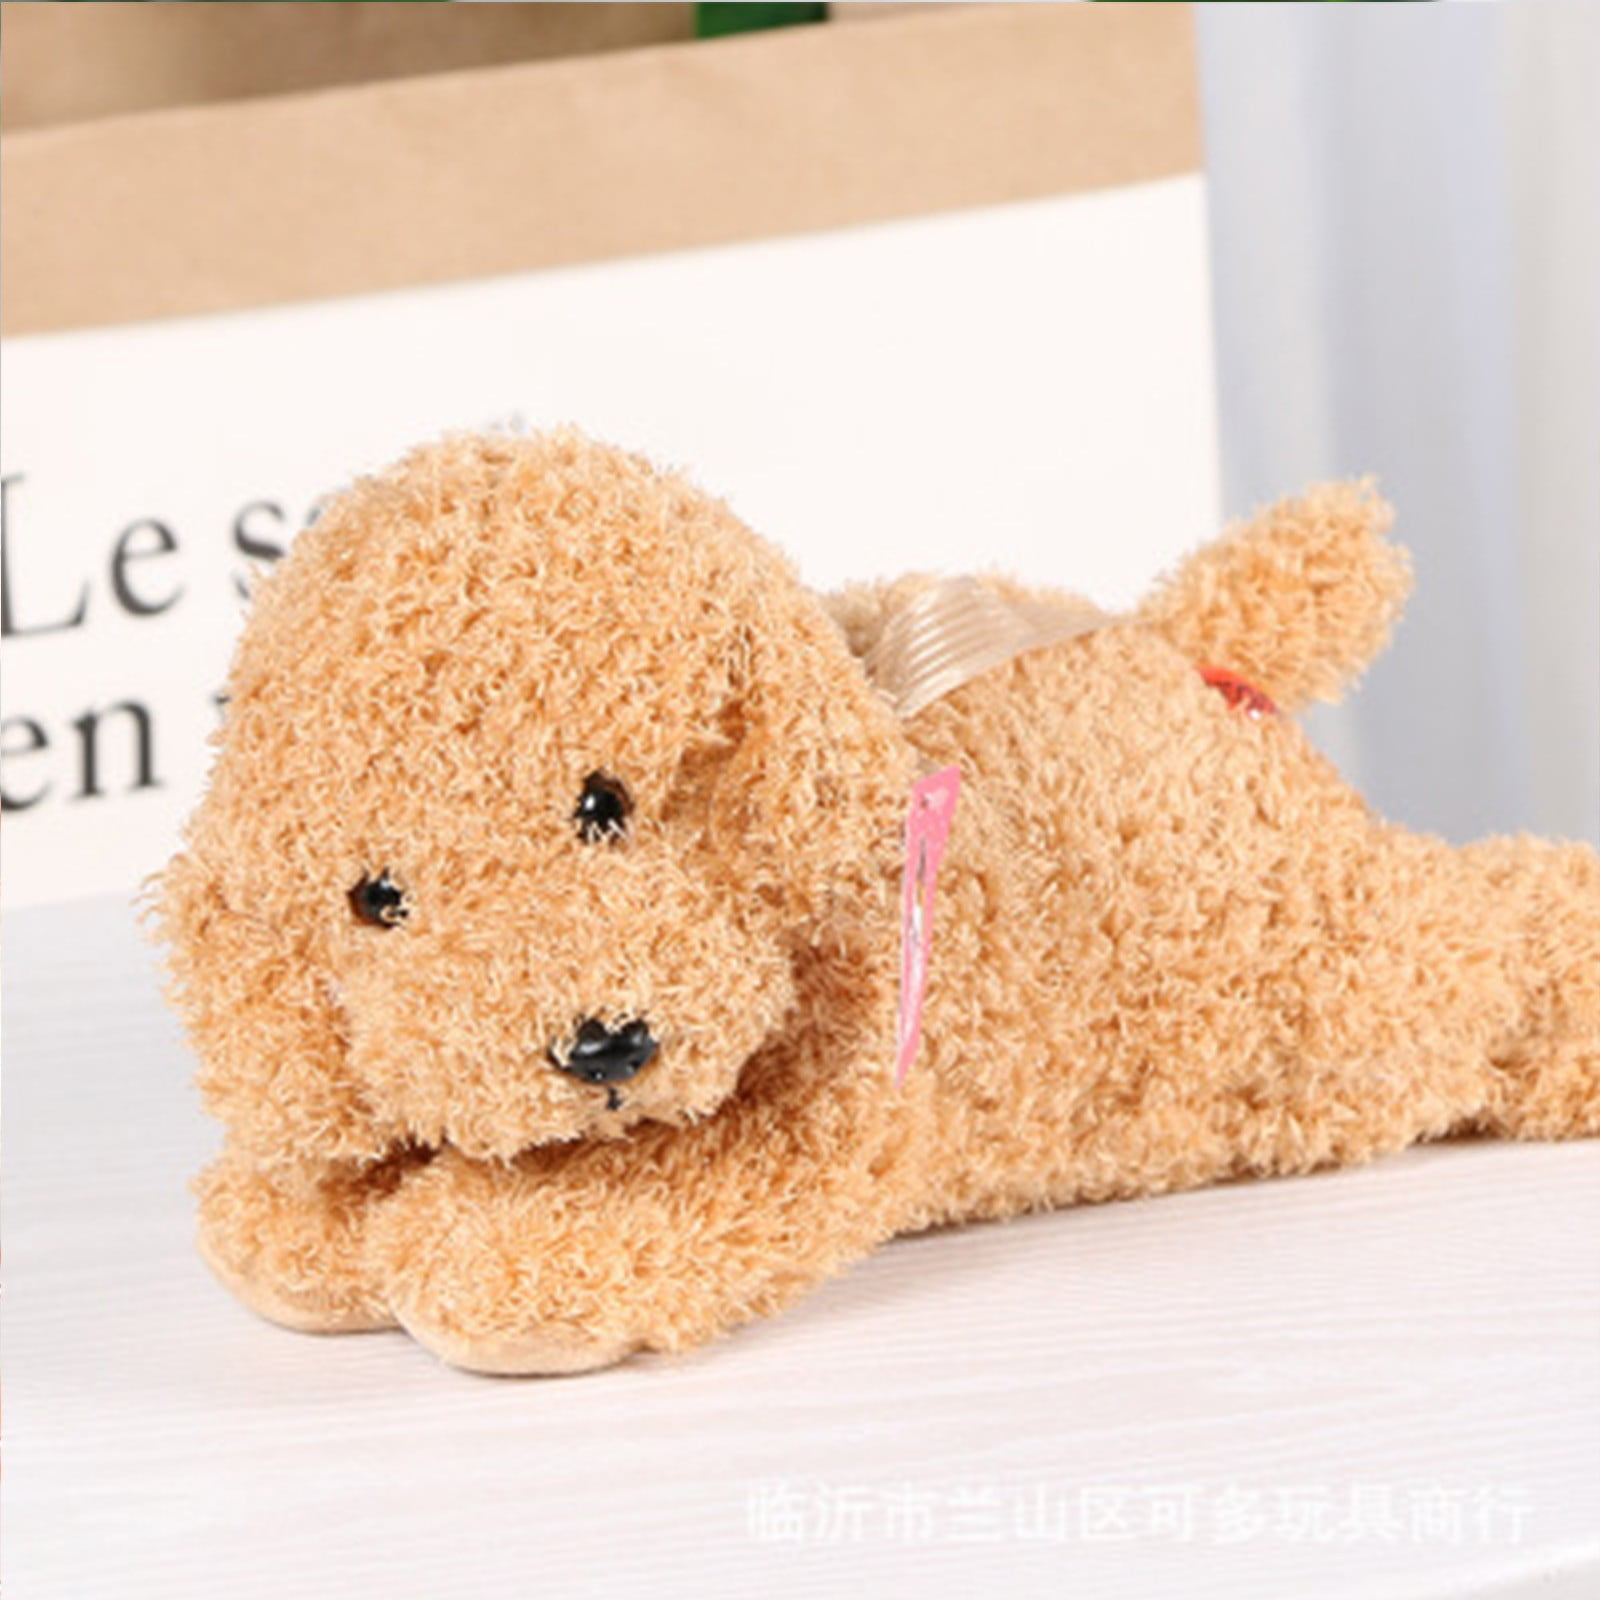 1x Puppy Mini Buddies Cute Plush Teddy Animal Dog Soft Stuffed Cuddly Gift Toy 